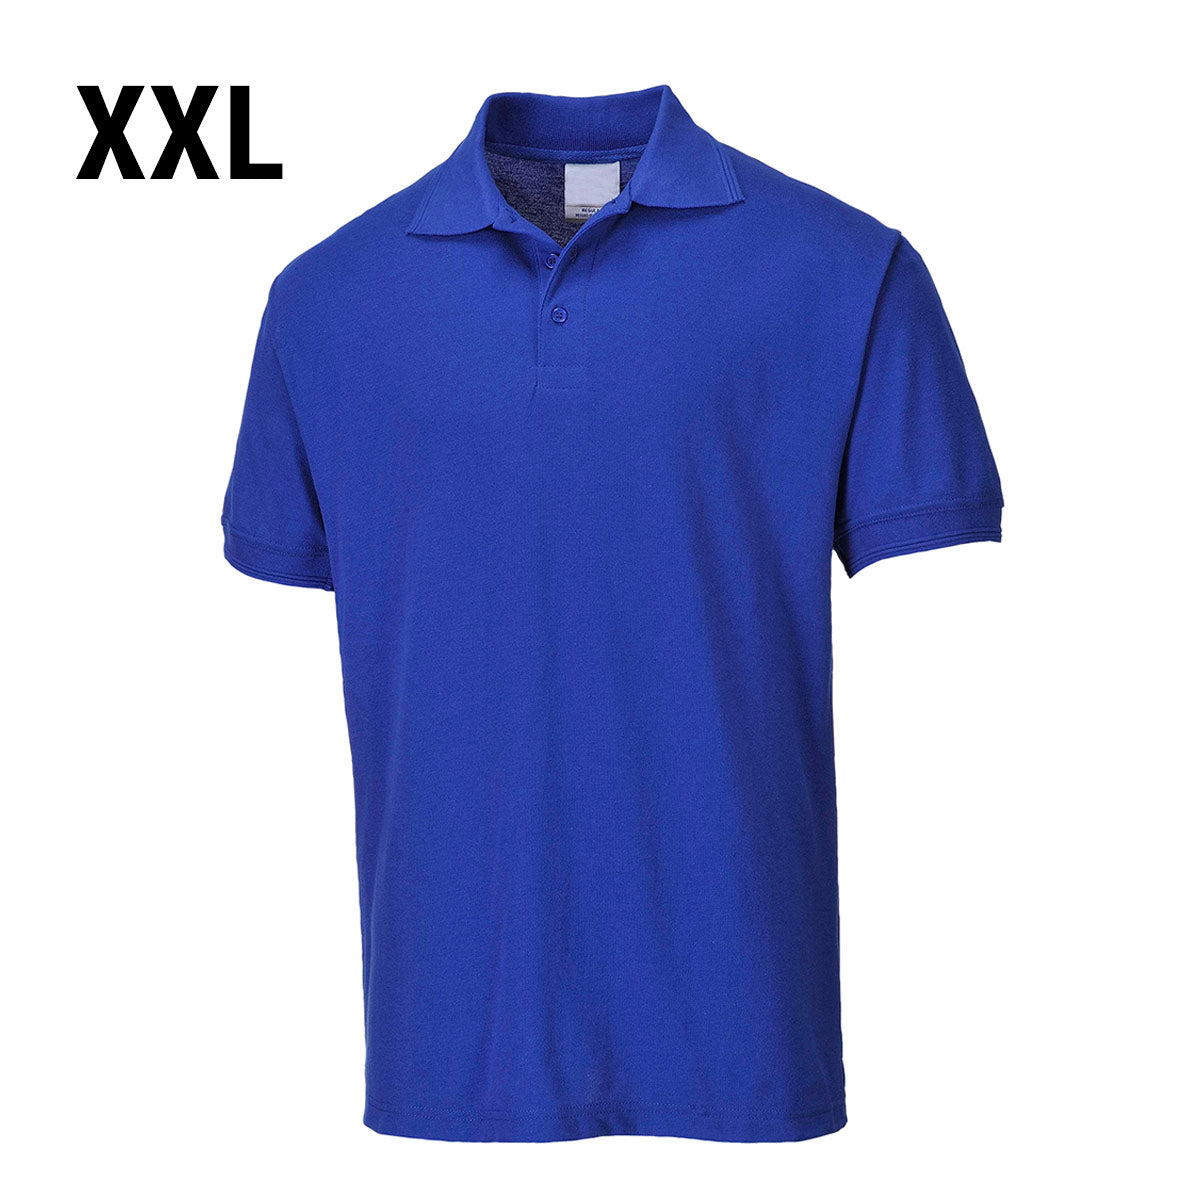 Poloskjorte for menn - kongeblå - størrelse: XXL